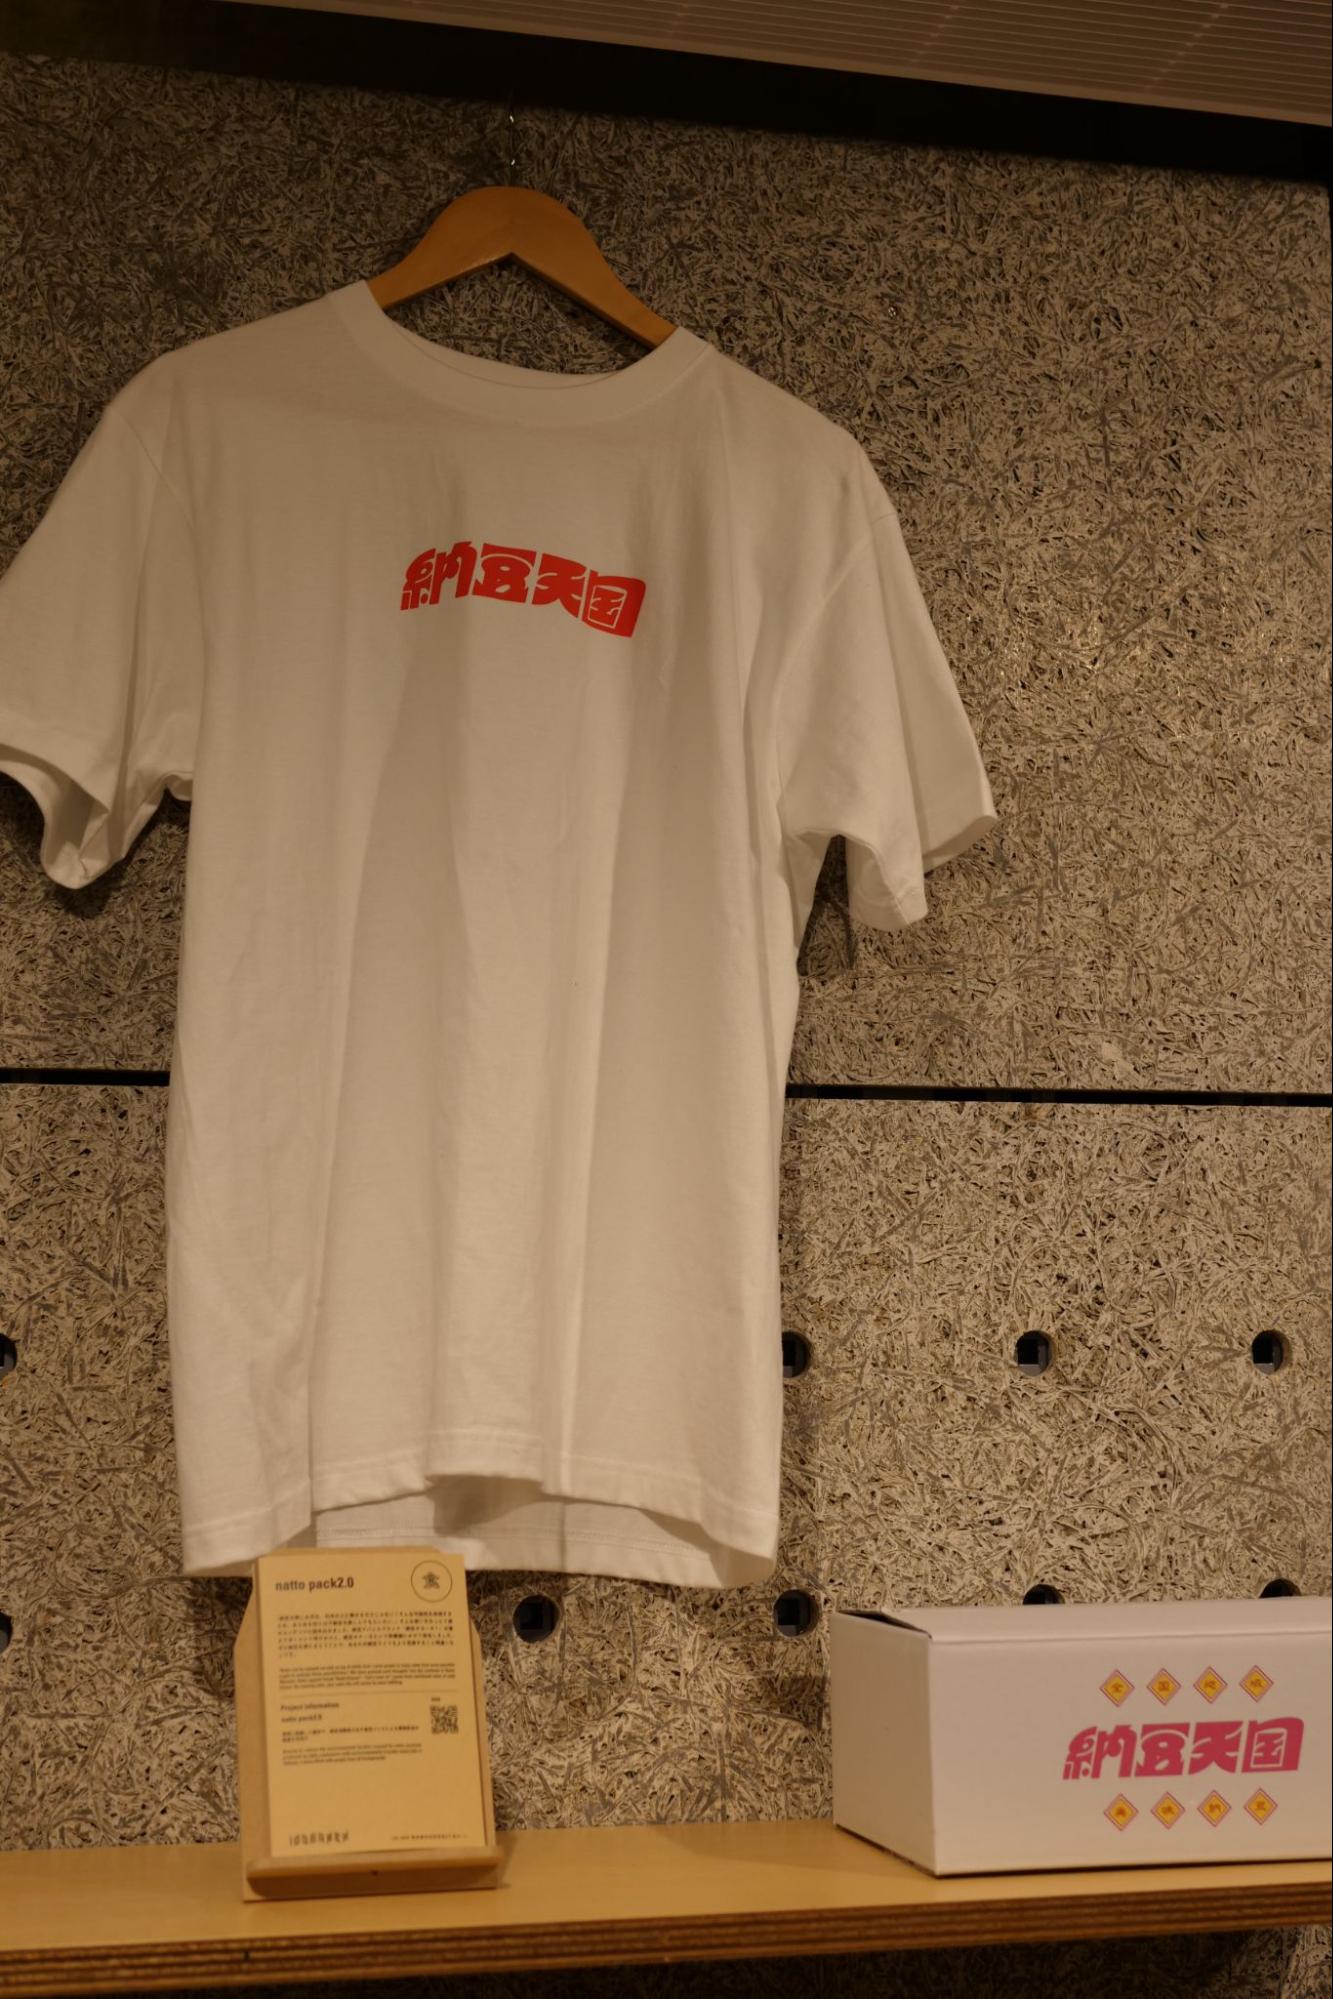 納豆インフルエンサーの「なっとう娘」こと鈴木真由子がオープンしたECサイト「納豆天国」。Galleryでは、ECサイトで購入可能なTシャツを展示しています。